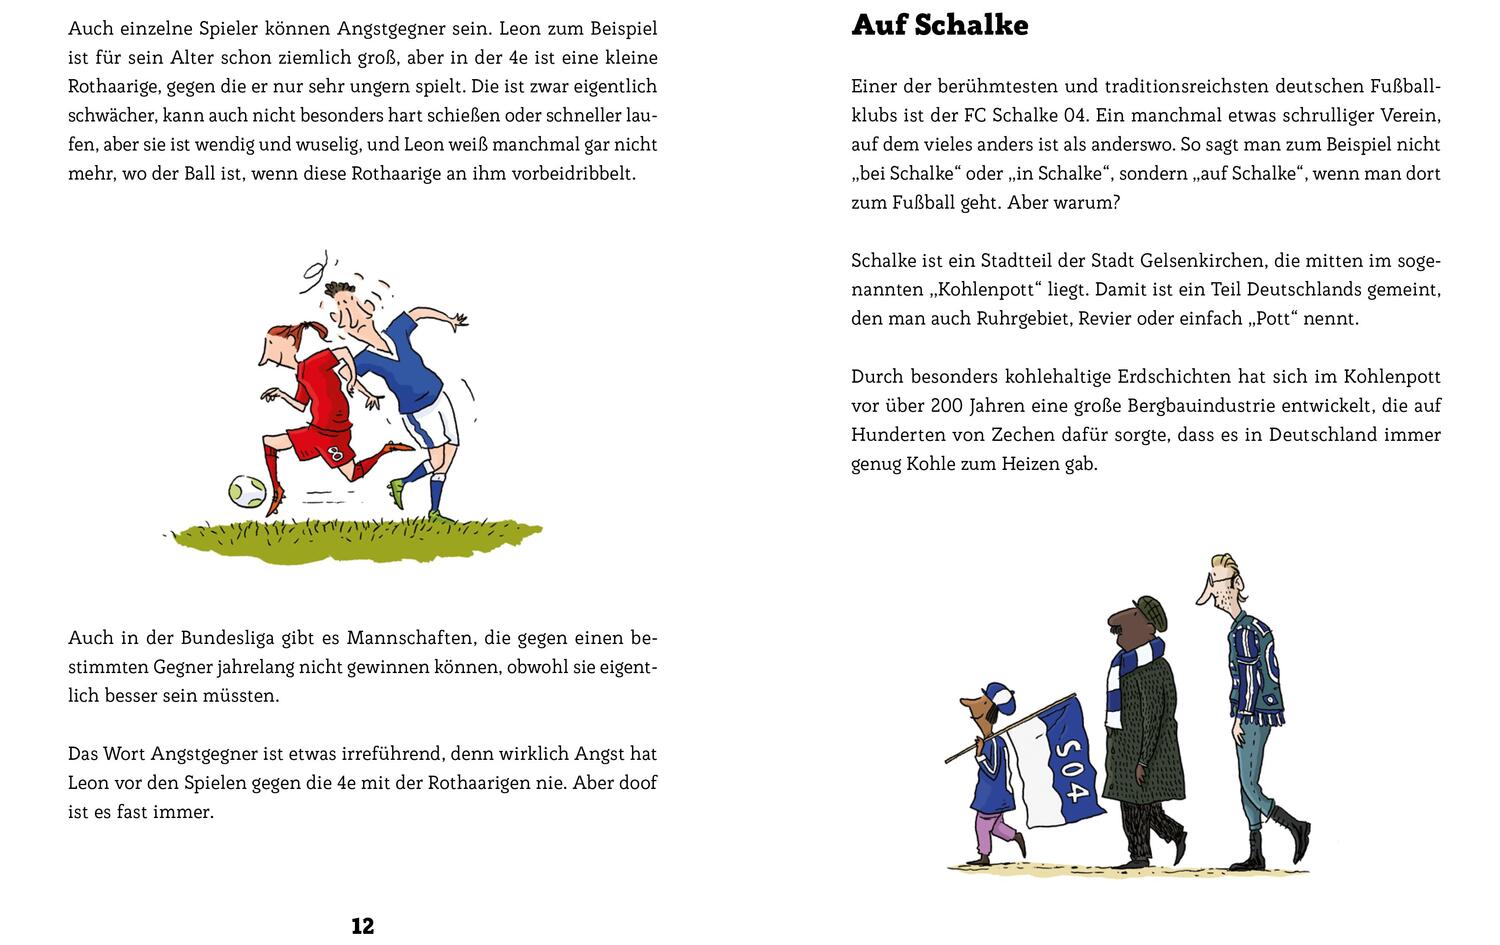 Bild: 9783954702893 | Arnd Zeiglers wunderbares Fußballbuch | Arnd Zeigler | Buch | 136 S.